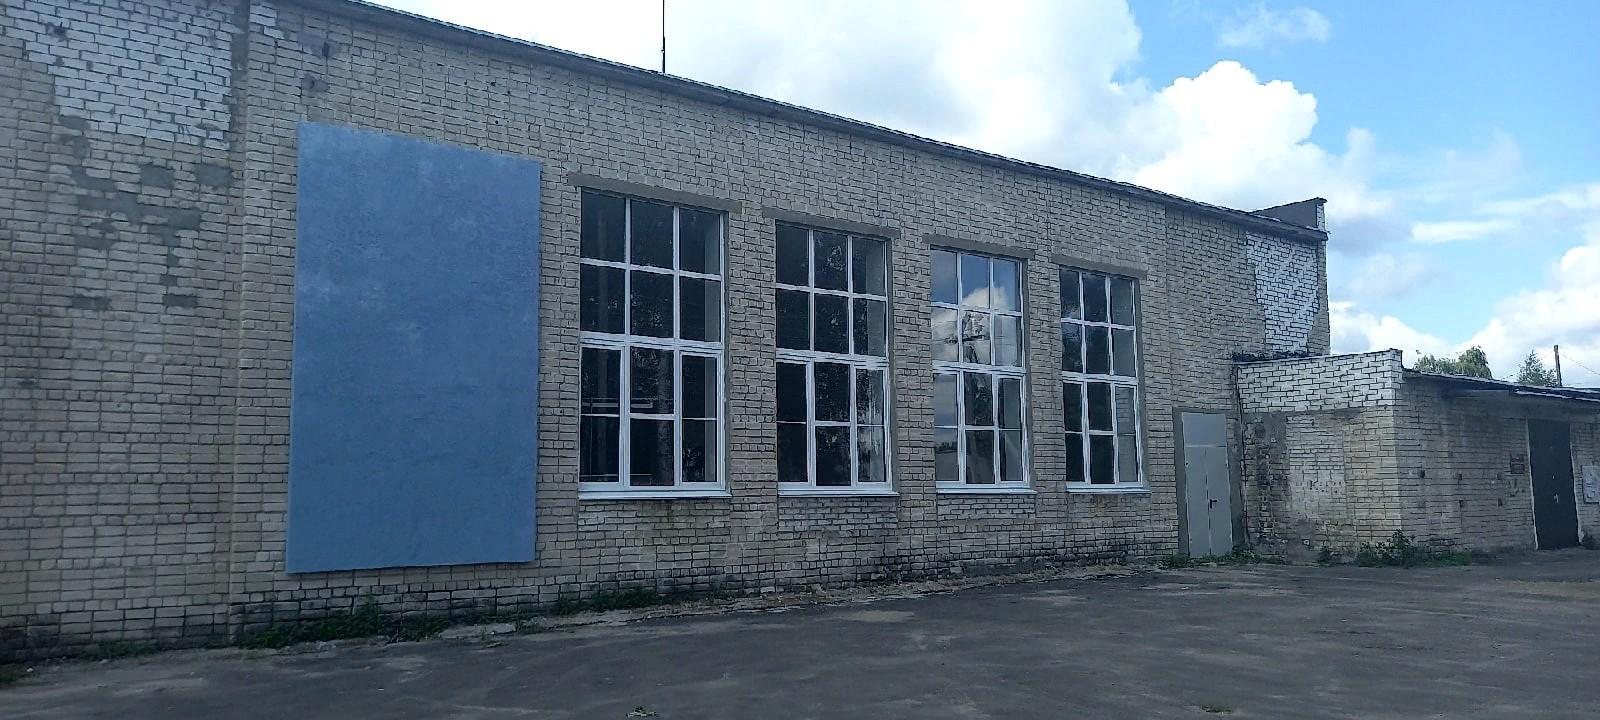 Шпалозаводской сельский дом культуры